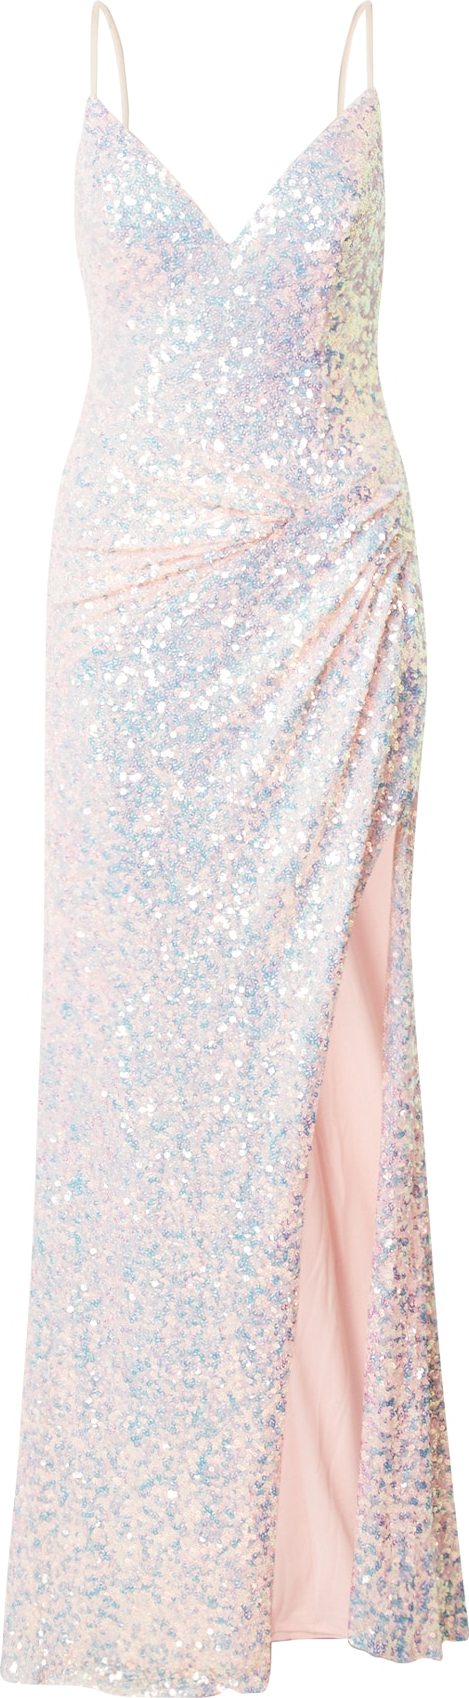 Unique Společenské šaty růžová / nebeská modř